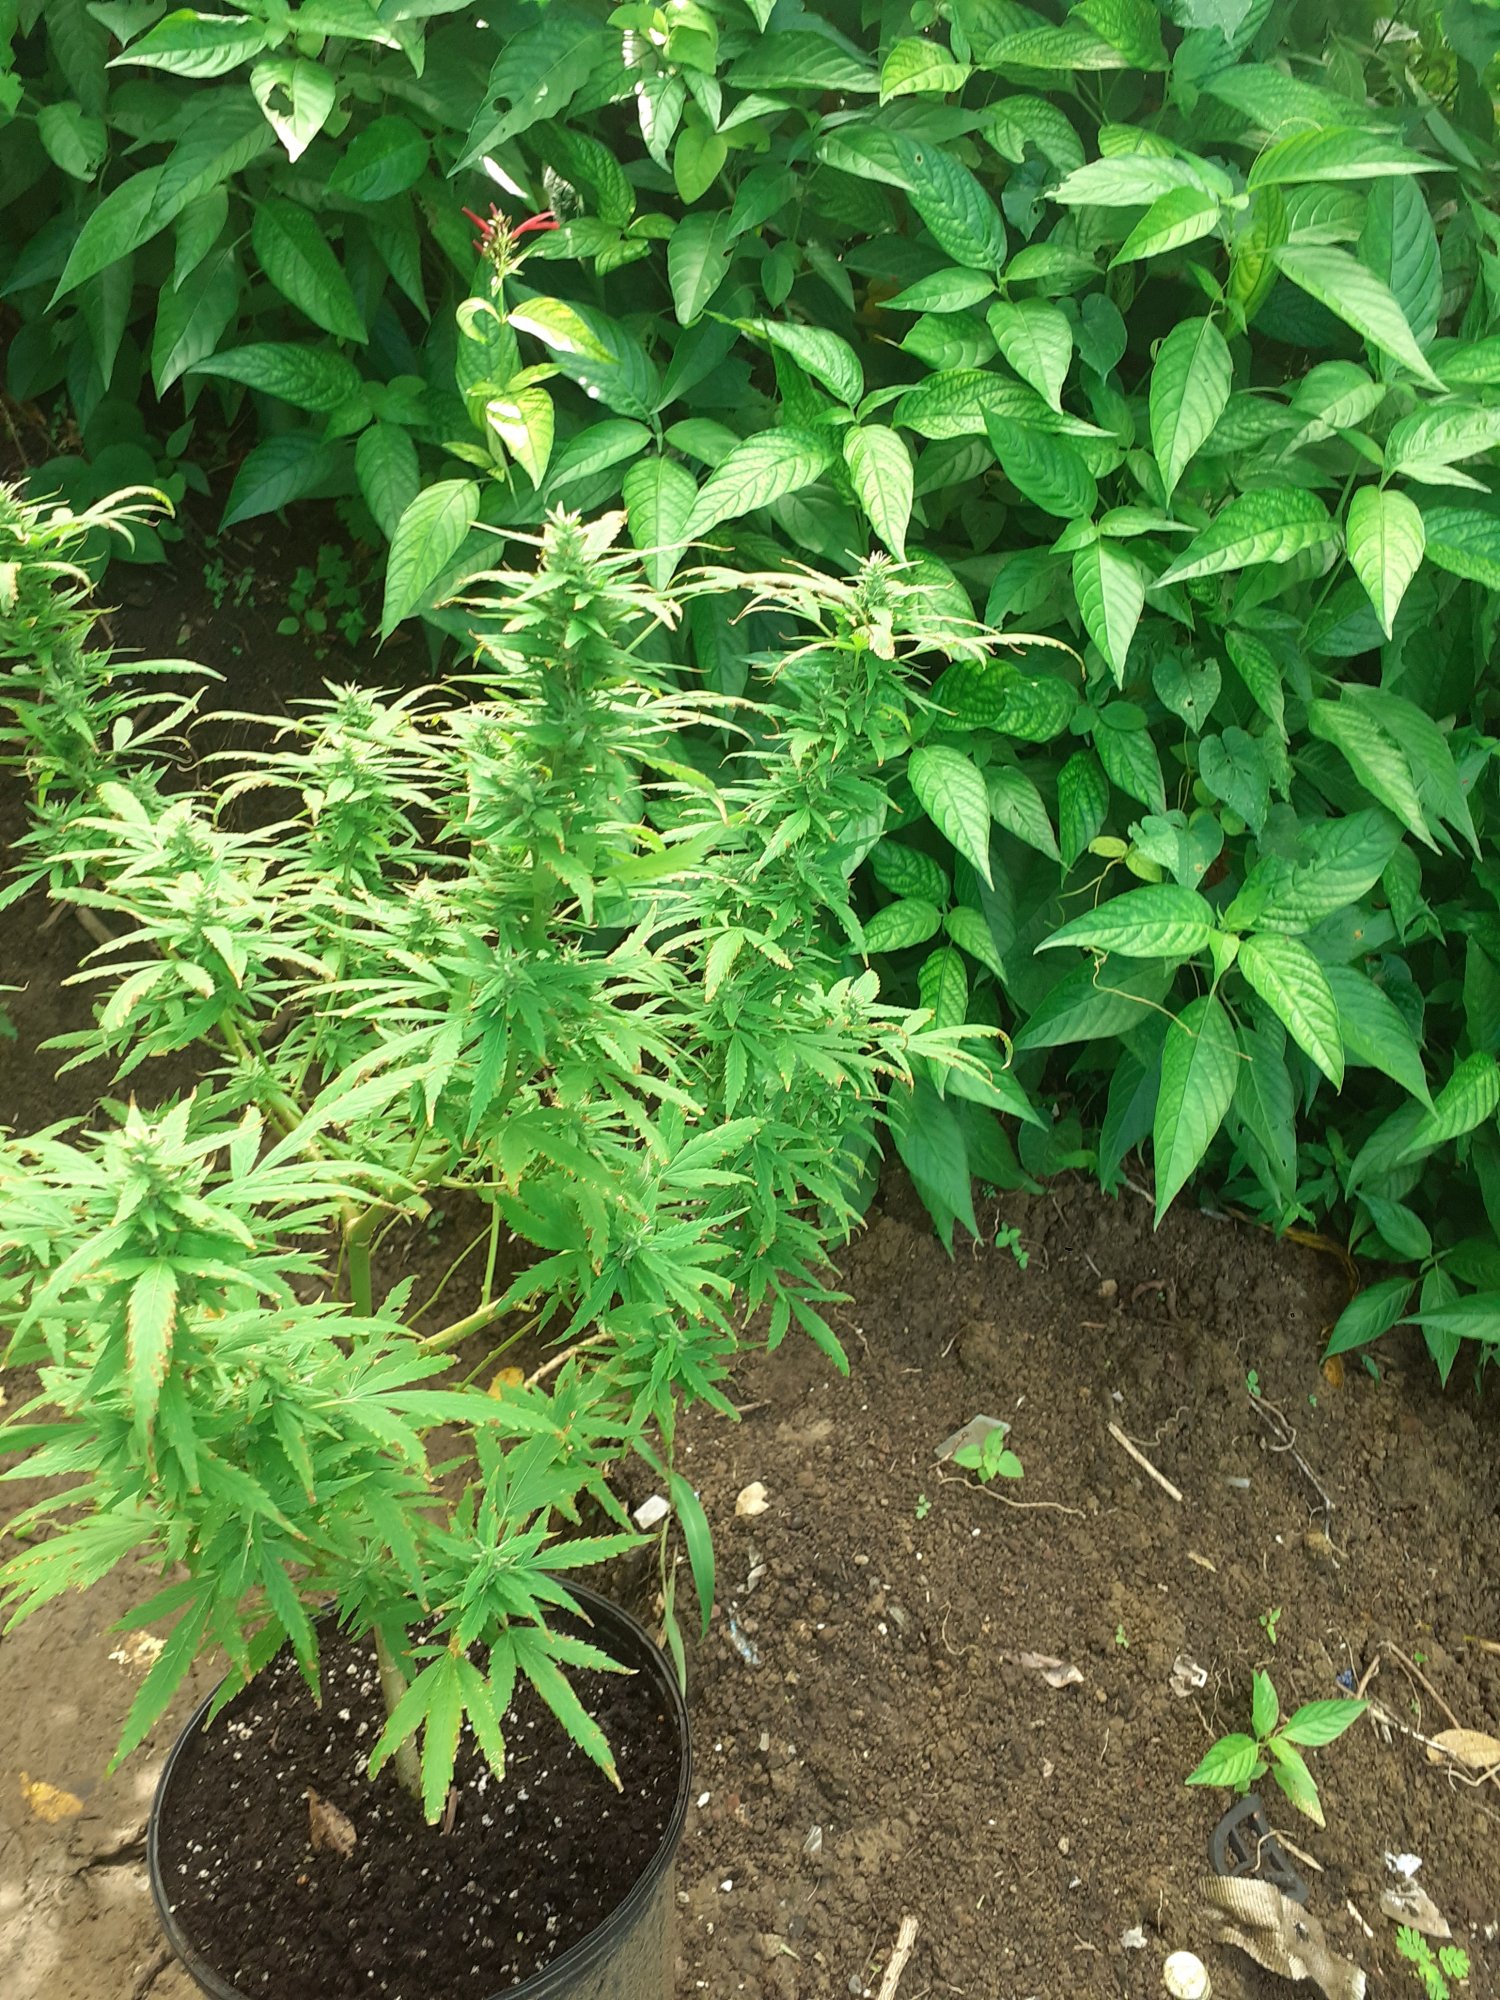 My first time growing marijuana